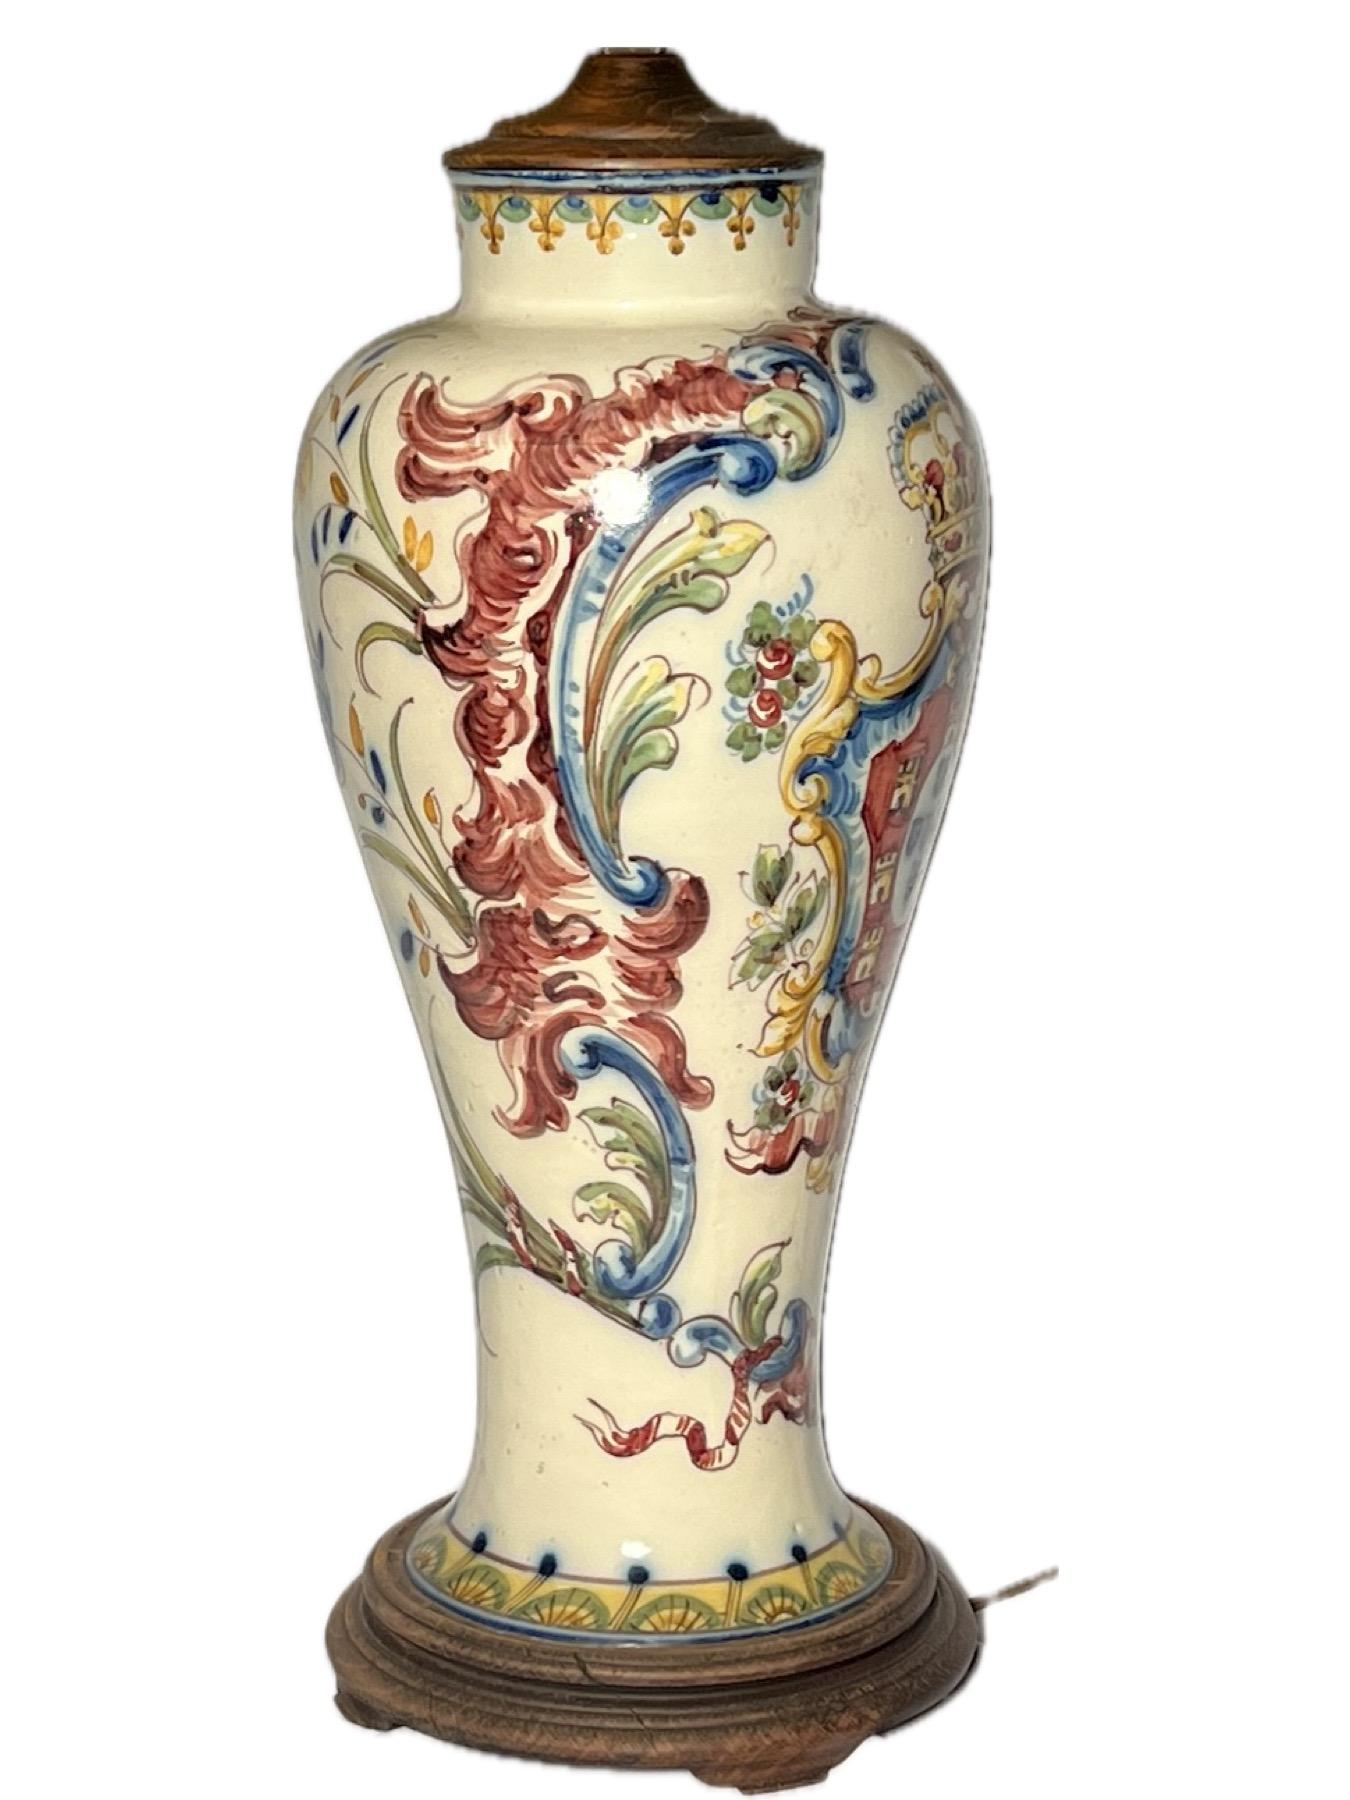 Ancien vase italien en porcelaine majolique transformé en lampe, vers 1880.